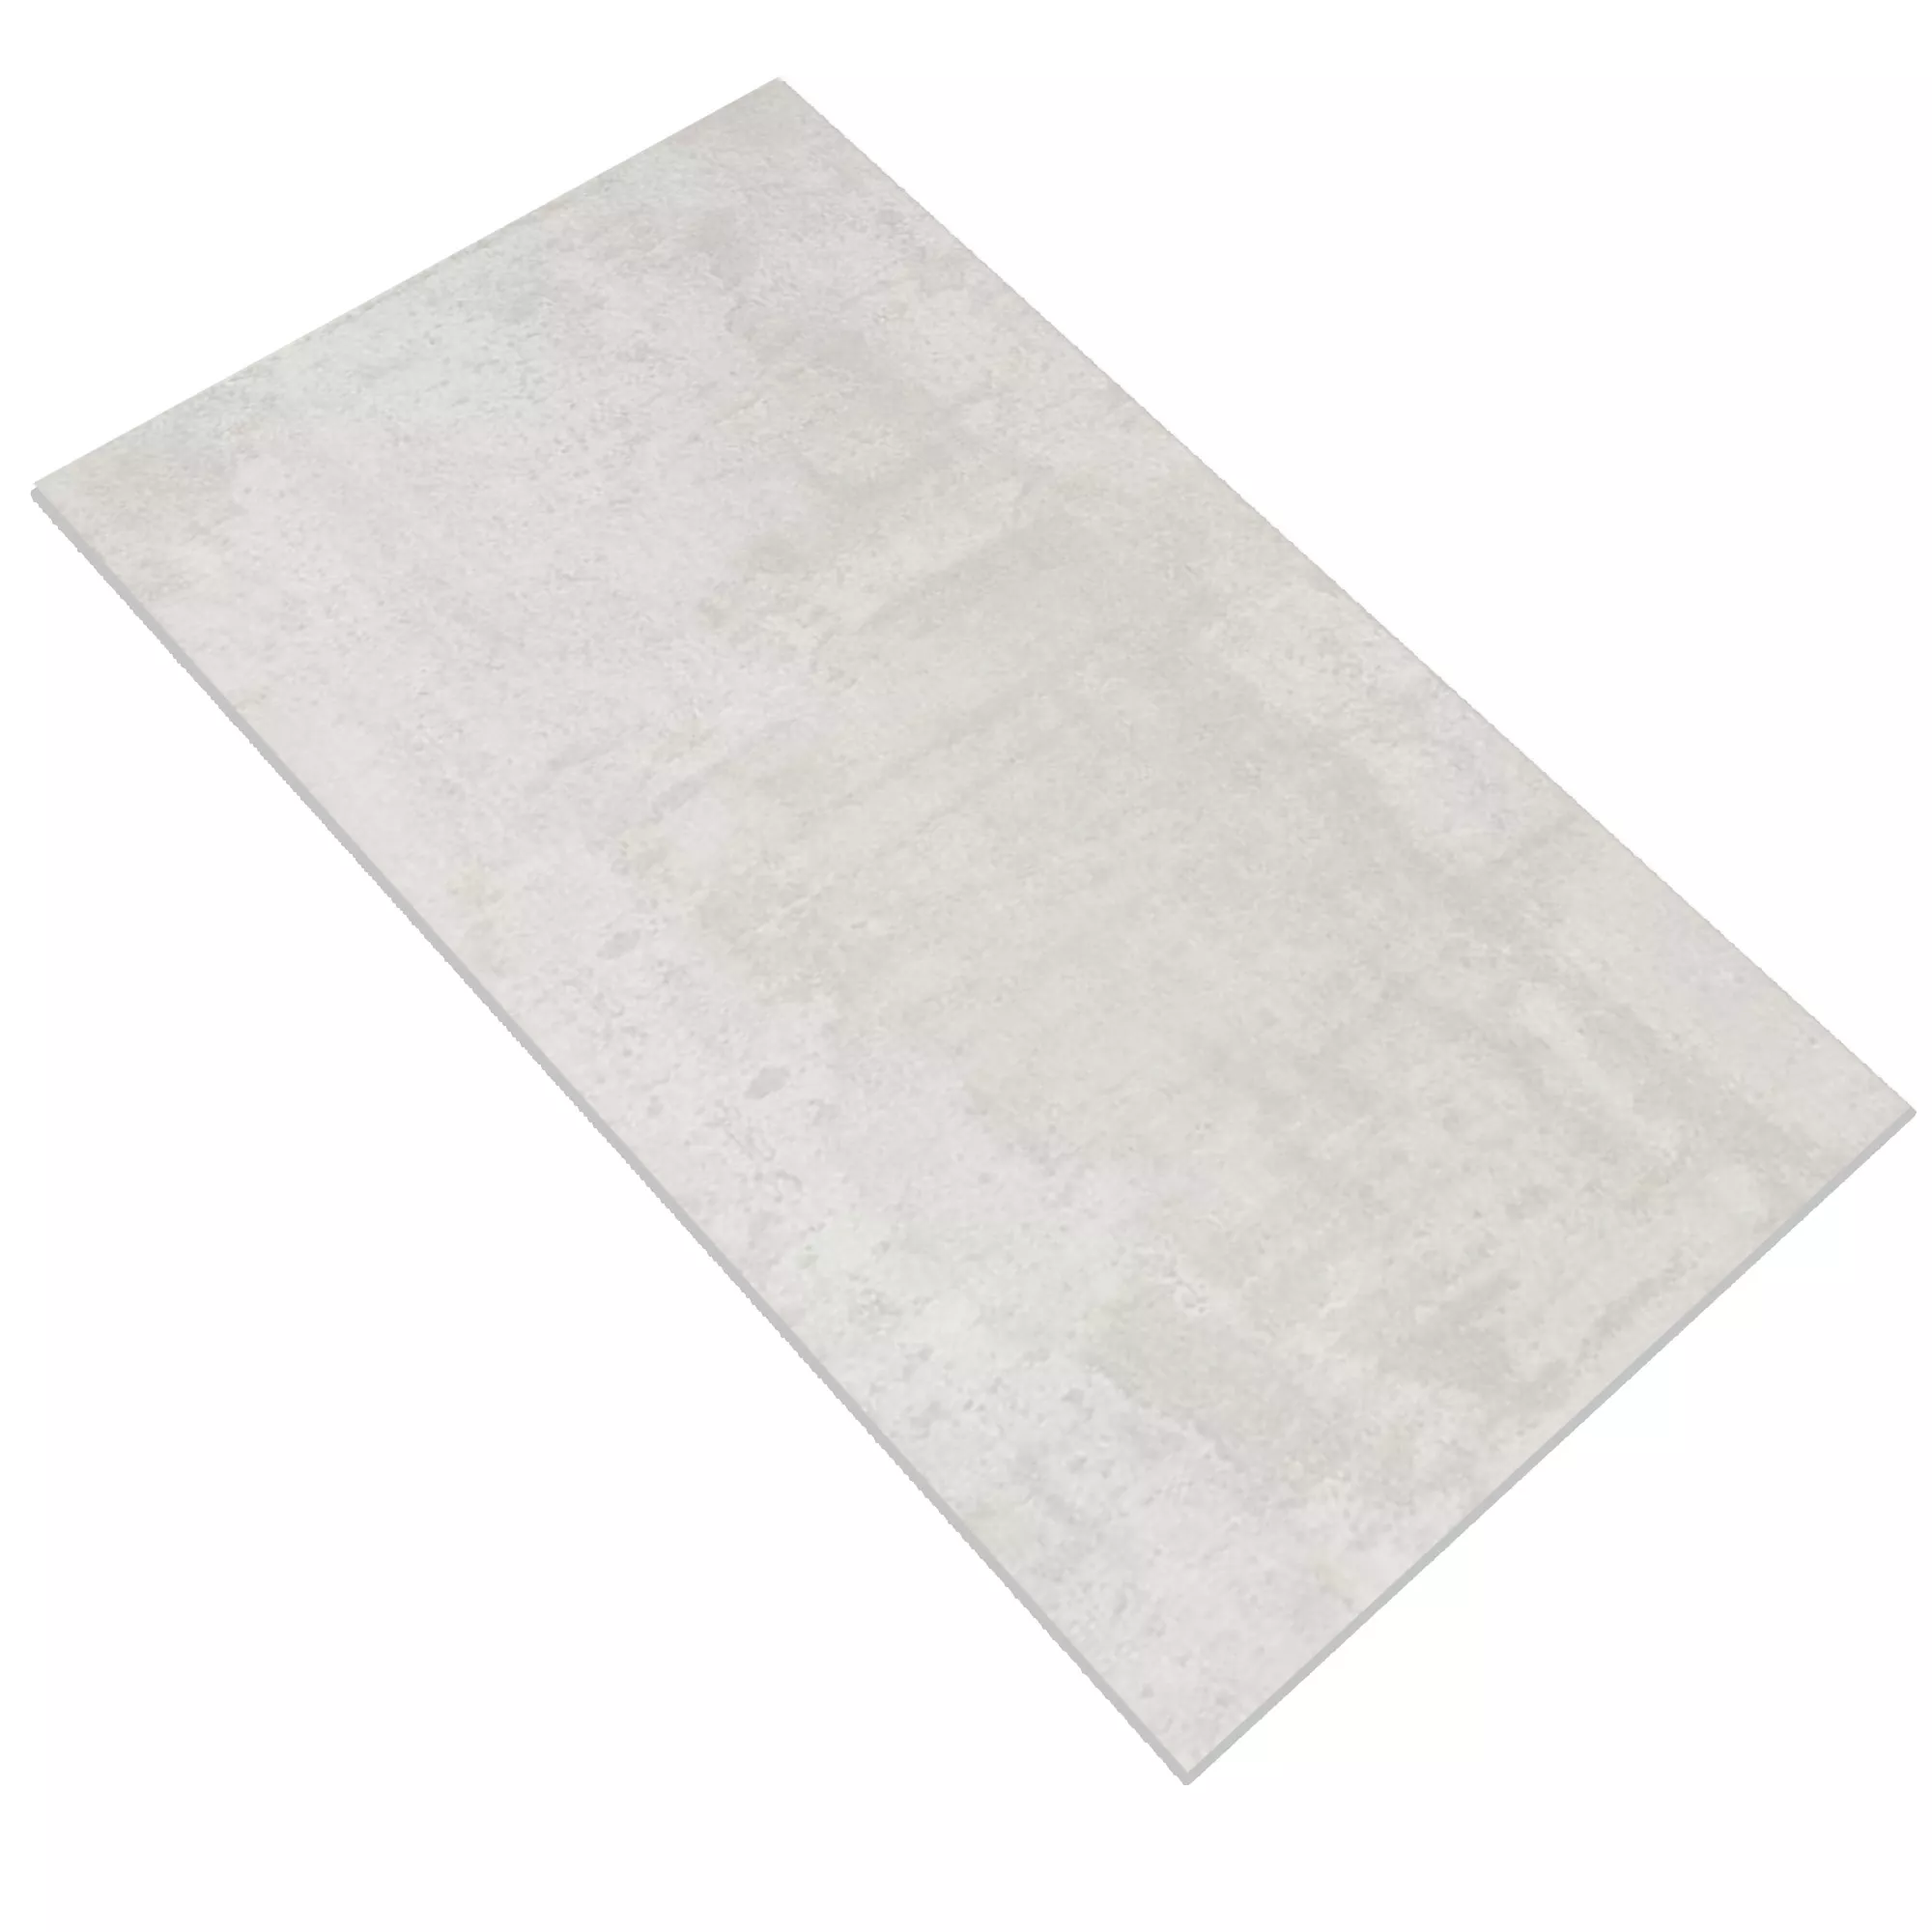 Πλακάκια Δαπέδου Herion Μεταλλική Εμφάνιση Lappato Blanco 45x90cm